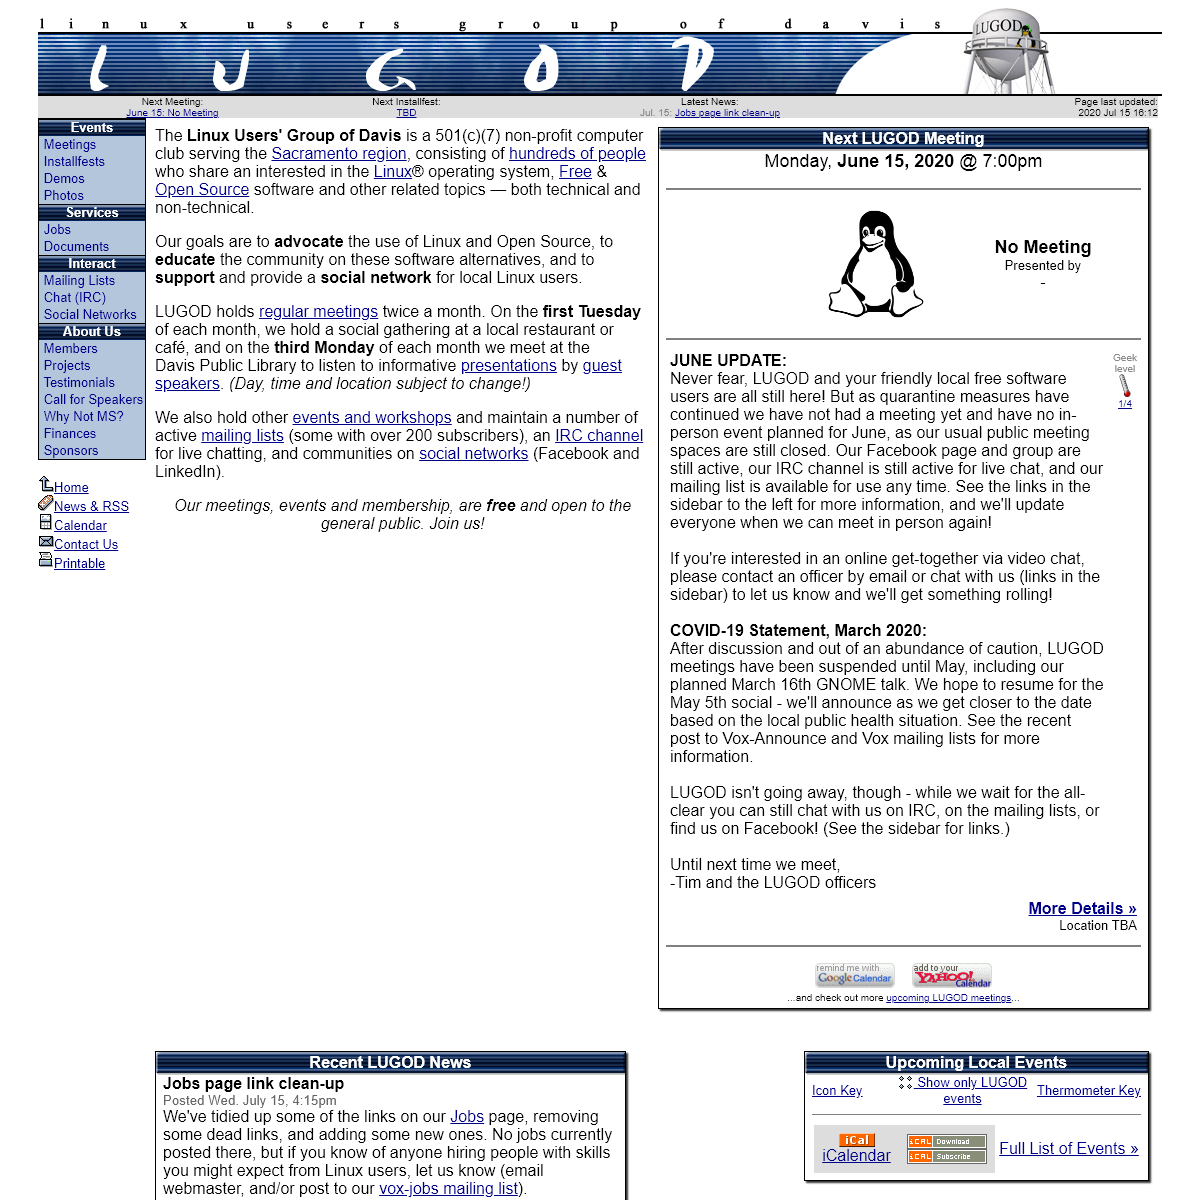 A complete backup of lugod.org